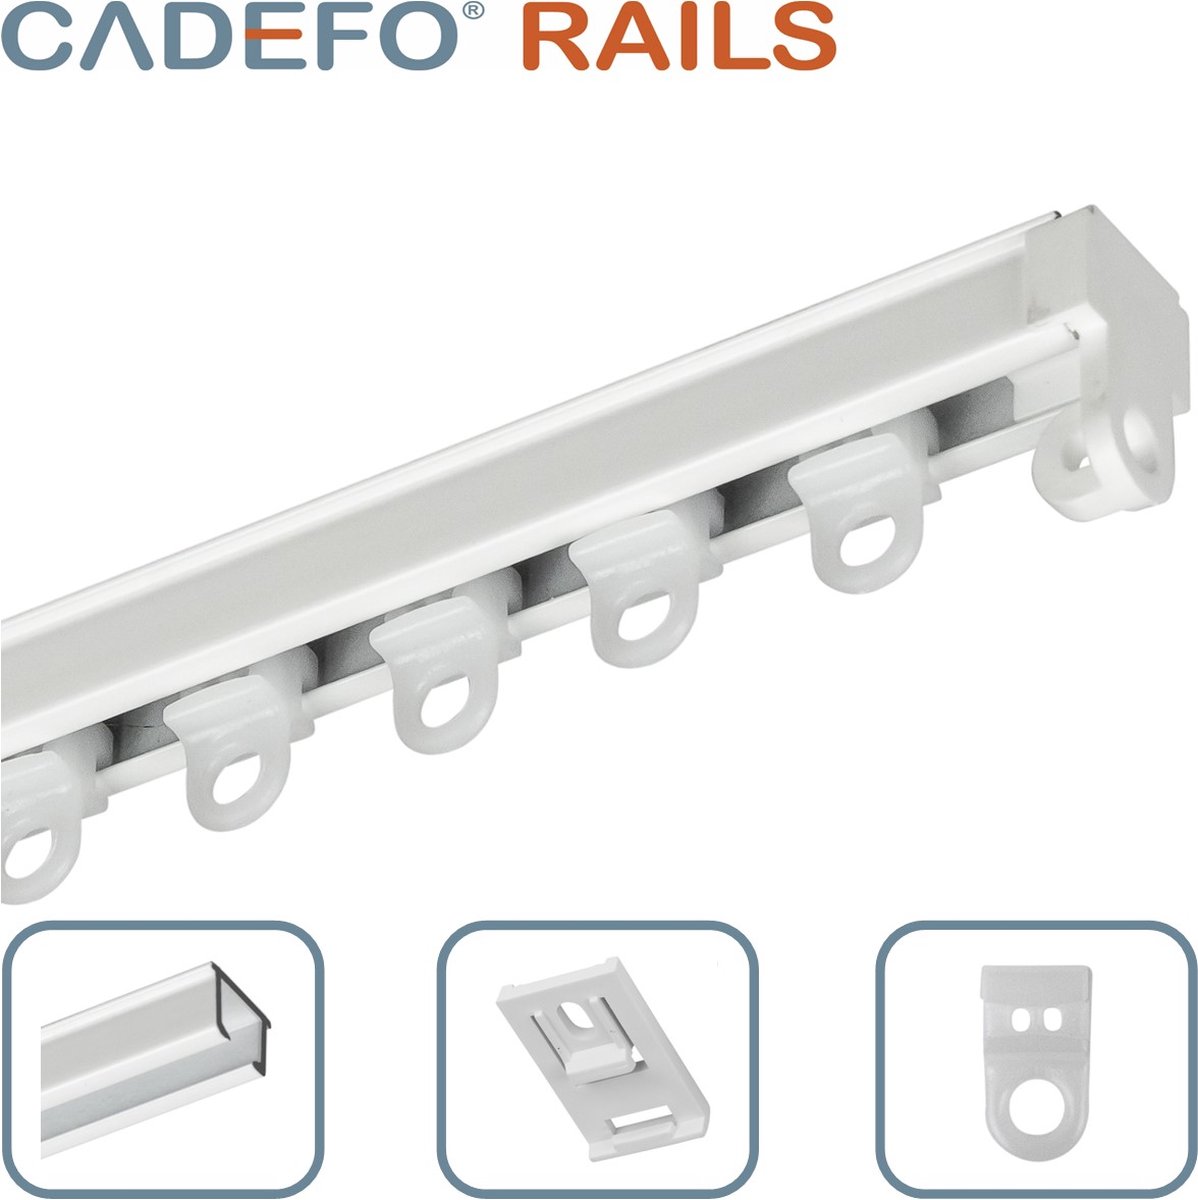 CADEFO RAILS (351 - 400 cm) Gordijnrails - Compleet op maat! - UIT 1 STUK - Leverbaar tot 6 meter - Plafondbevestiging - Lengte 400 cm - 4 meter